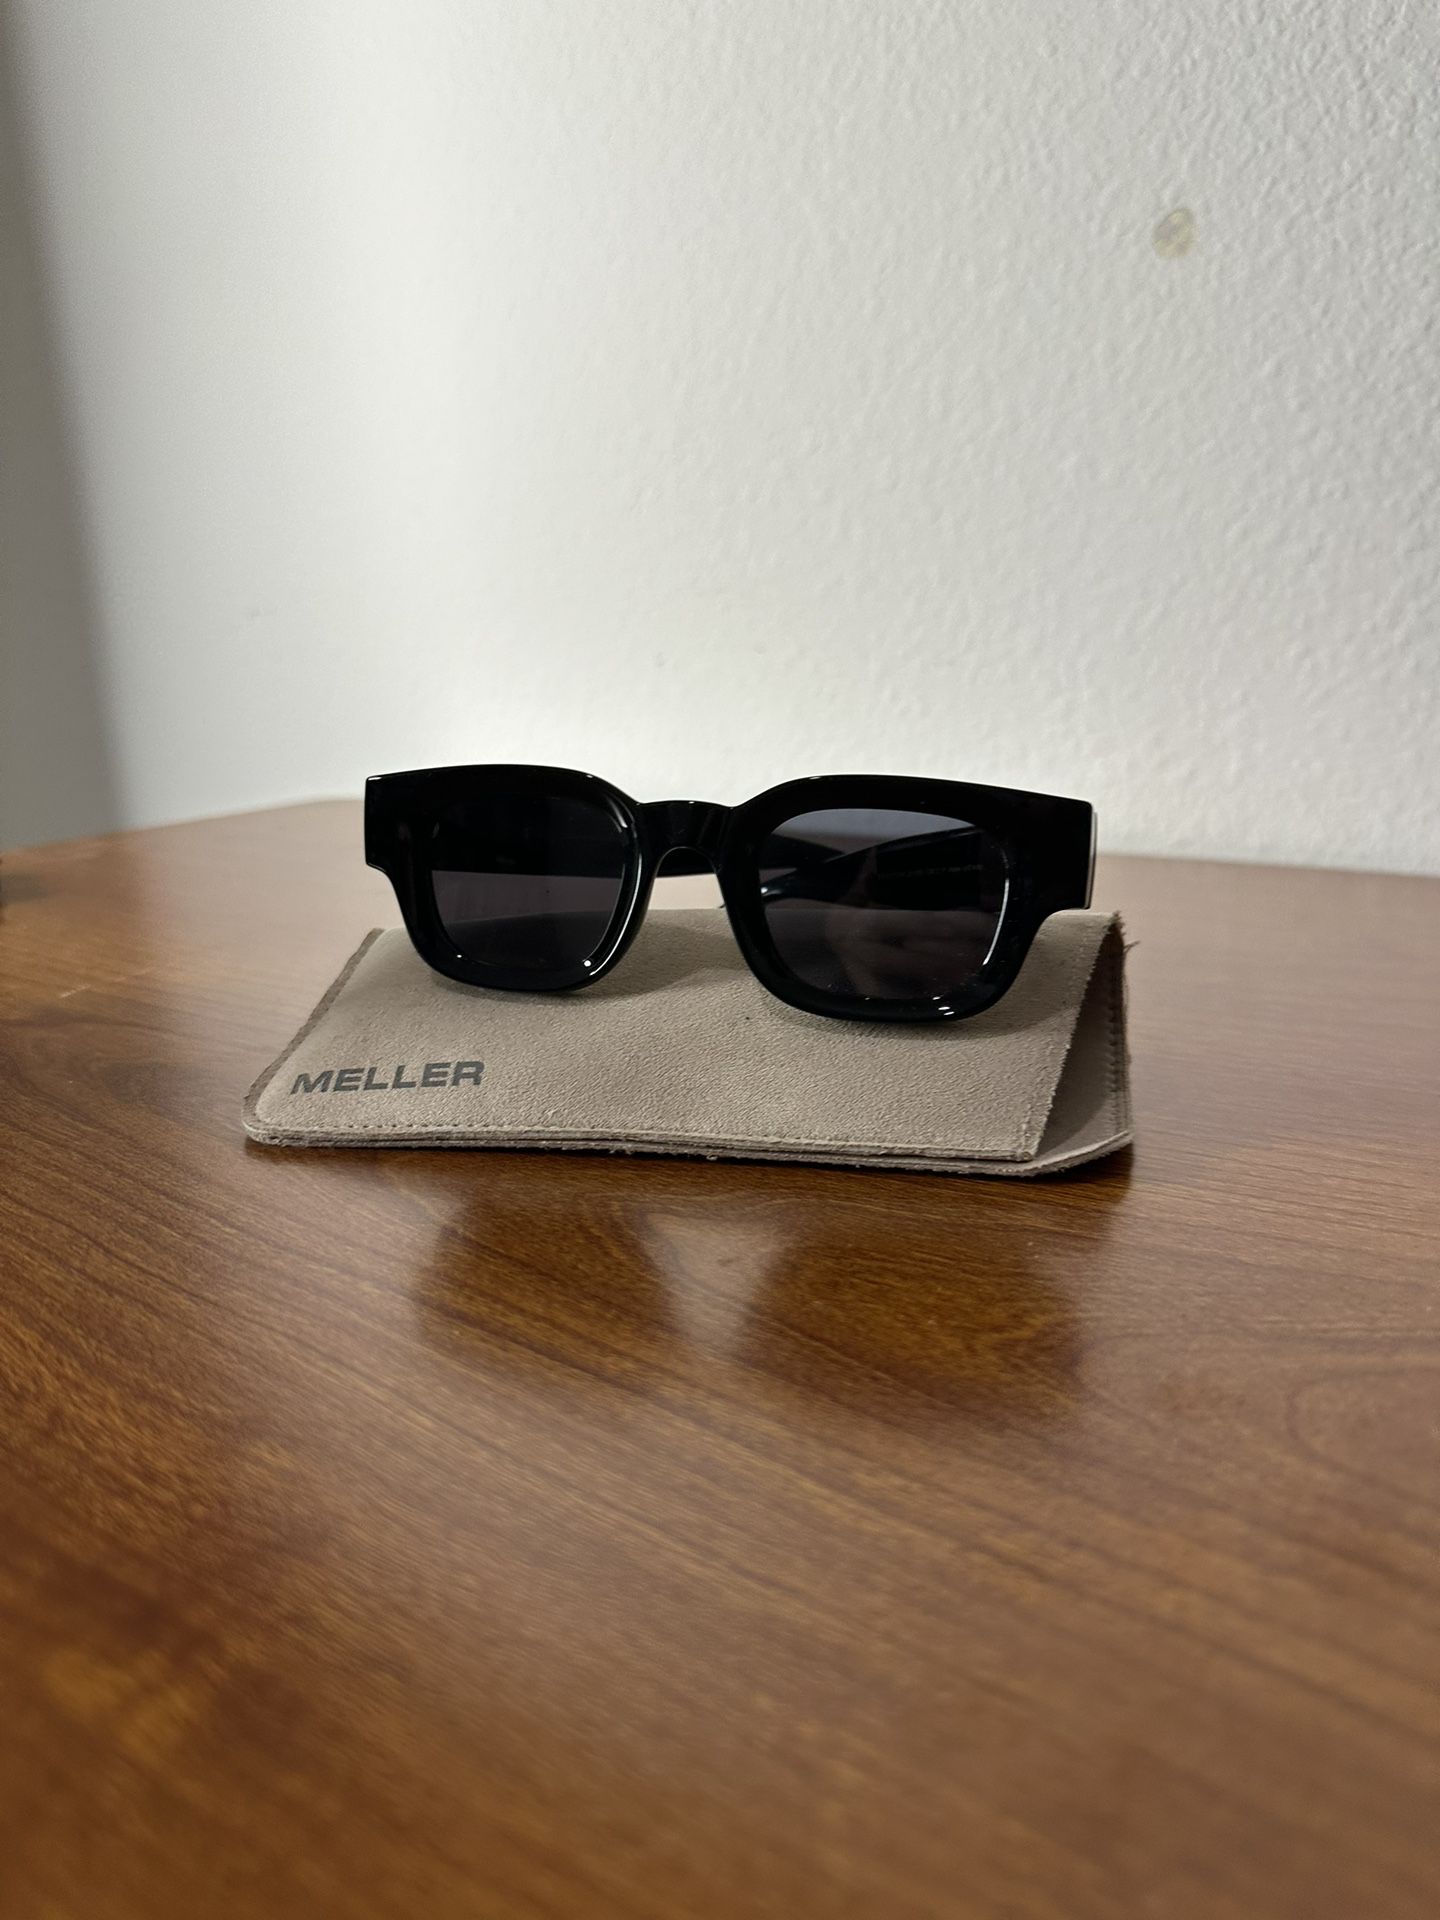 Meller sunglasses 